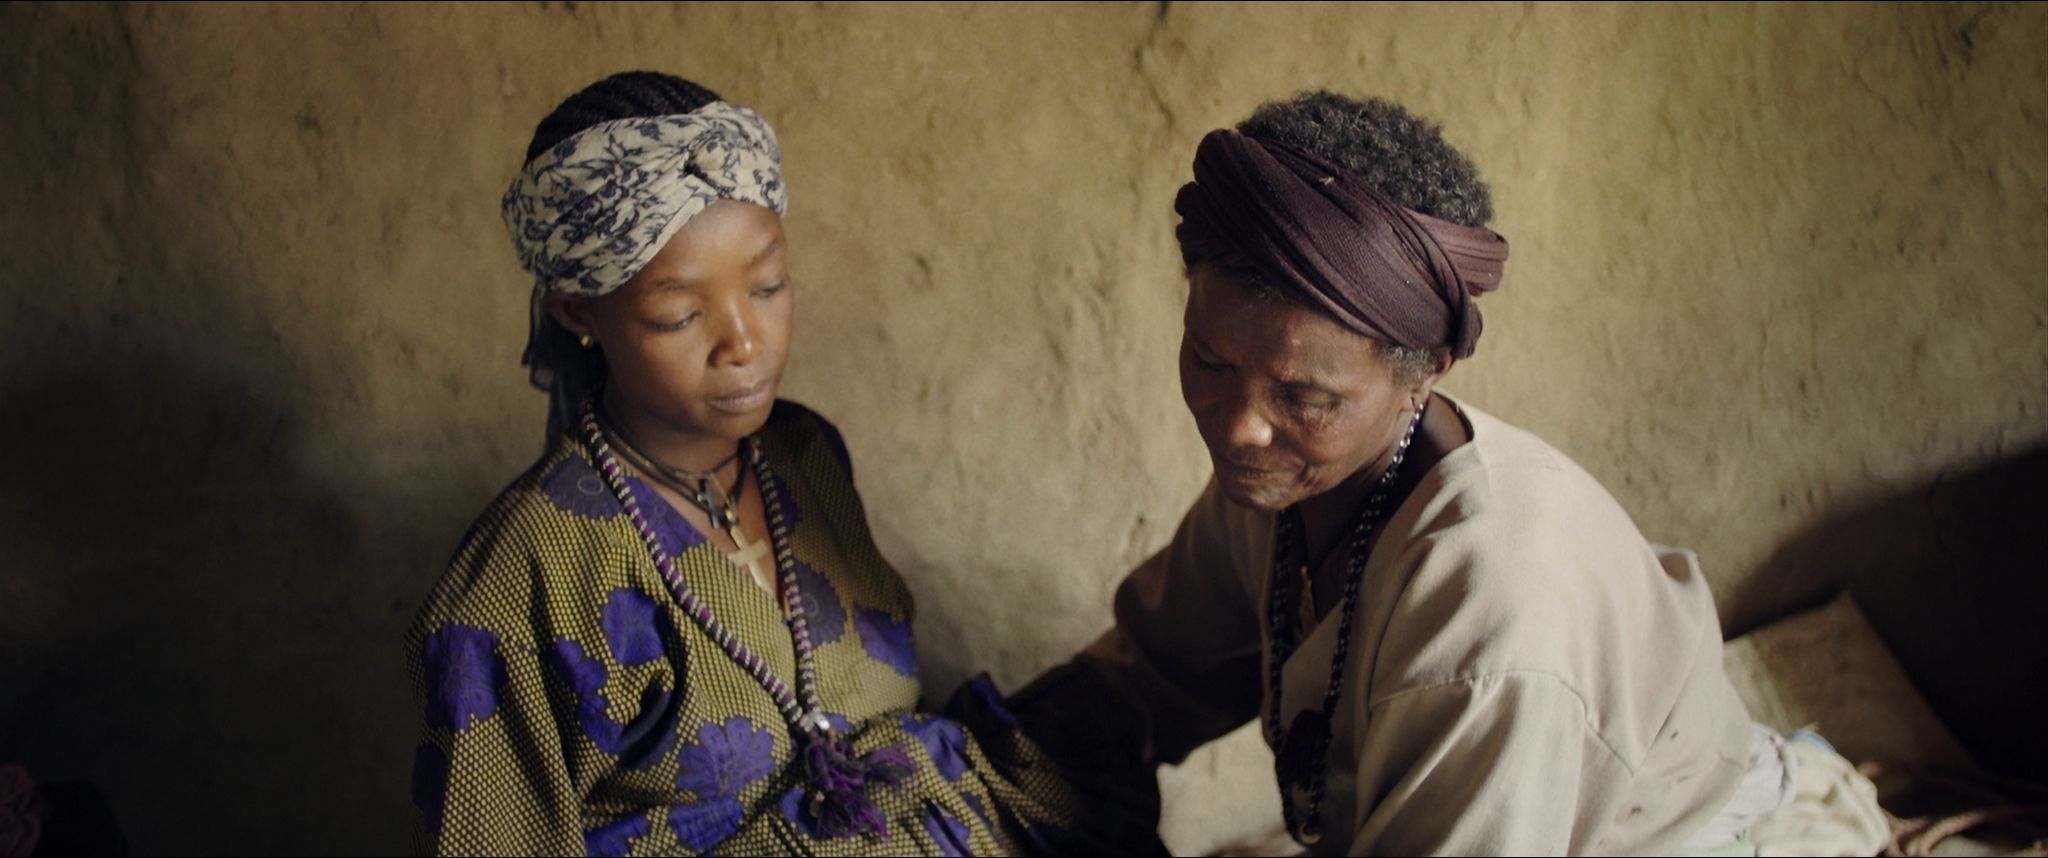 Documentaire among us women (Parmi nous les femmes - Naissance à Megendi)